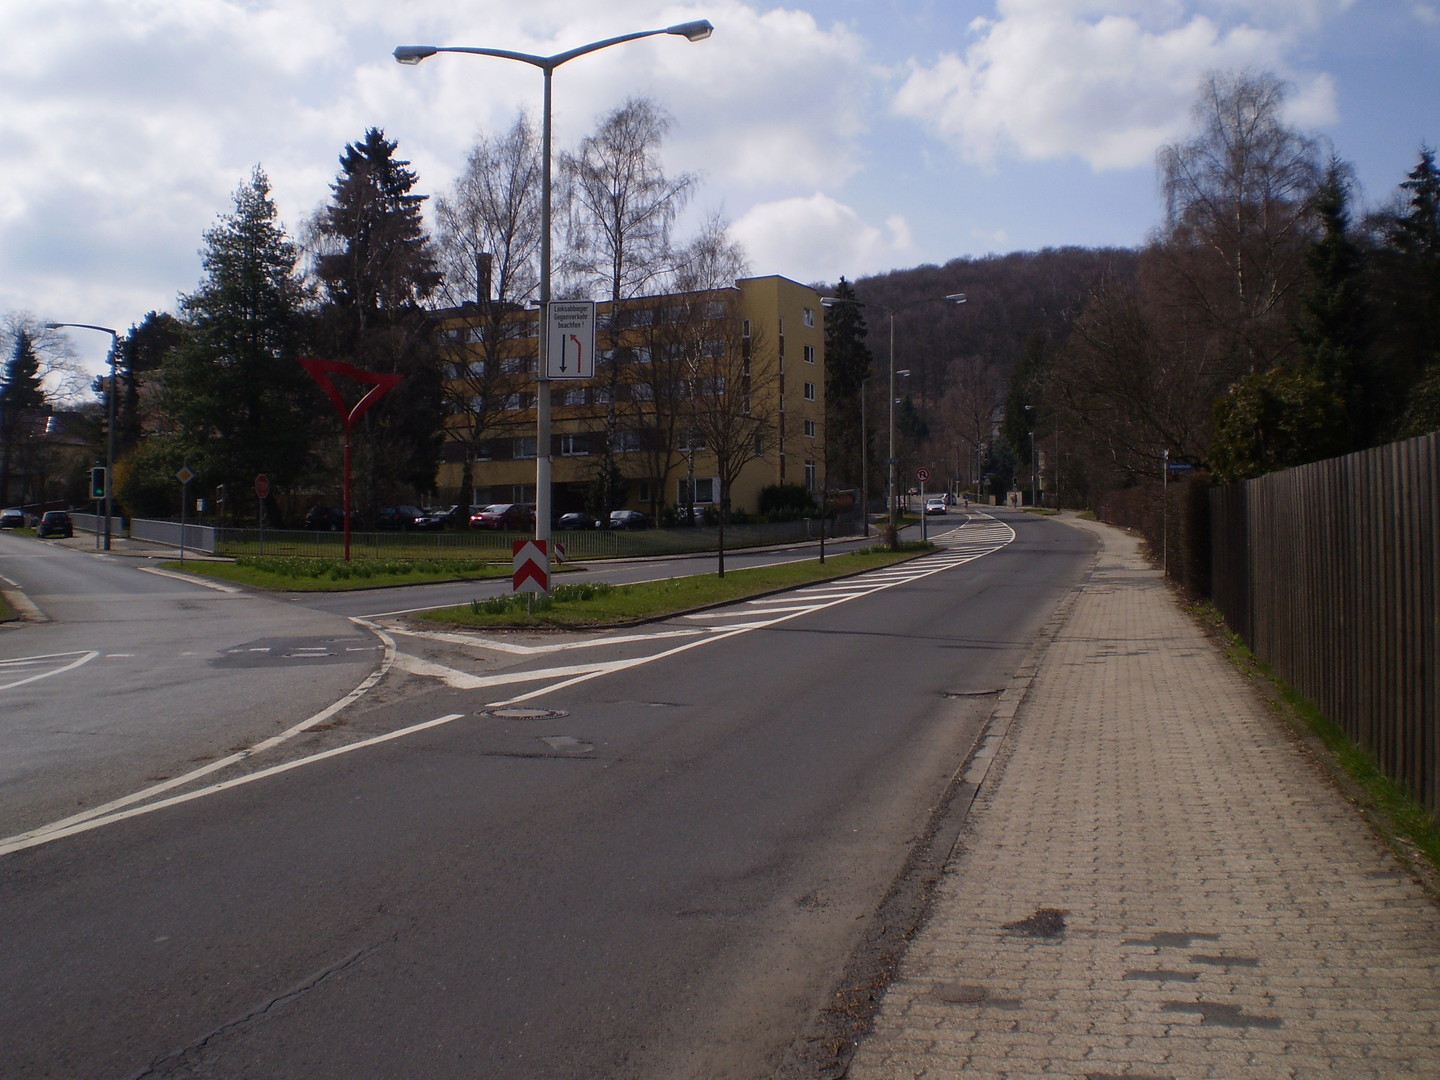 Ostanfahrt: Die Kreuzung Druseltalstraße/Konrad-Adenauer-Straße. Ab diesem Punkt heißt die Druseltalstraße "Im Druseltal":